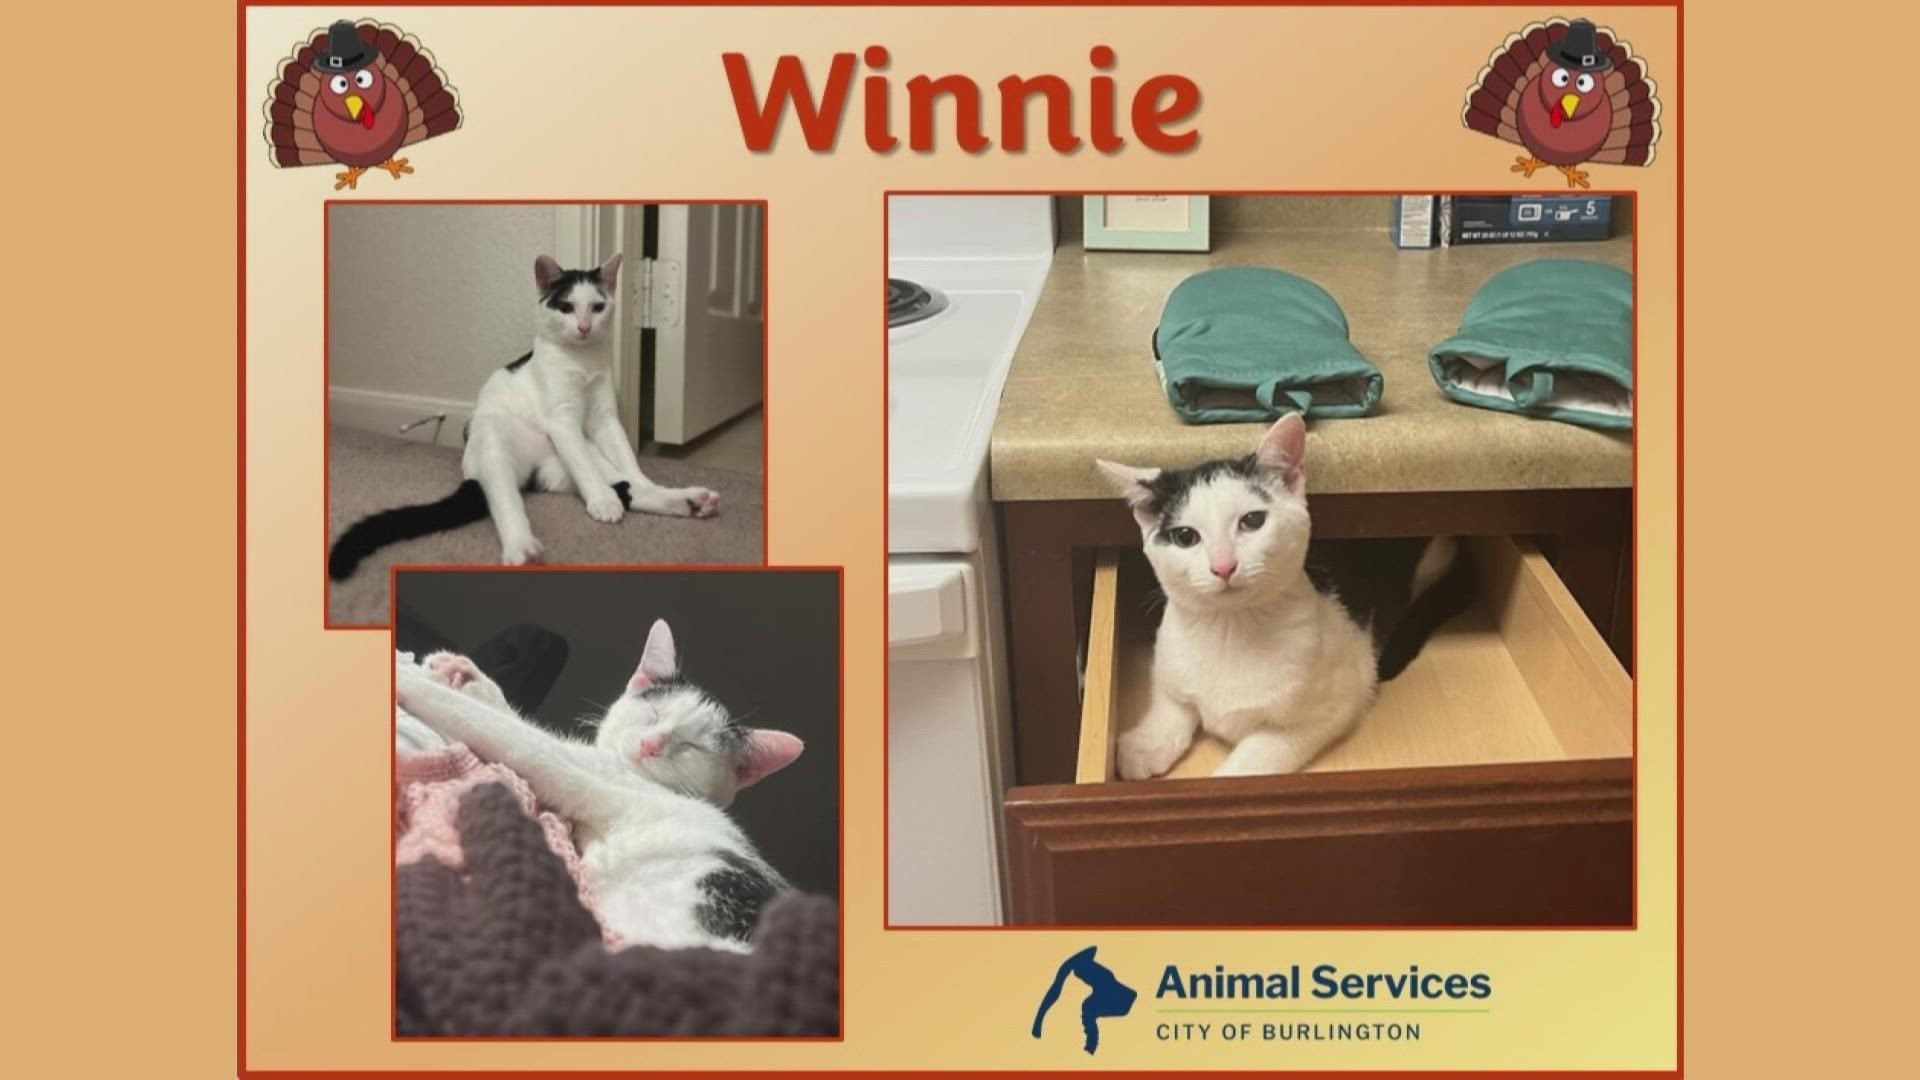 Let’s get Winnie adopted!